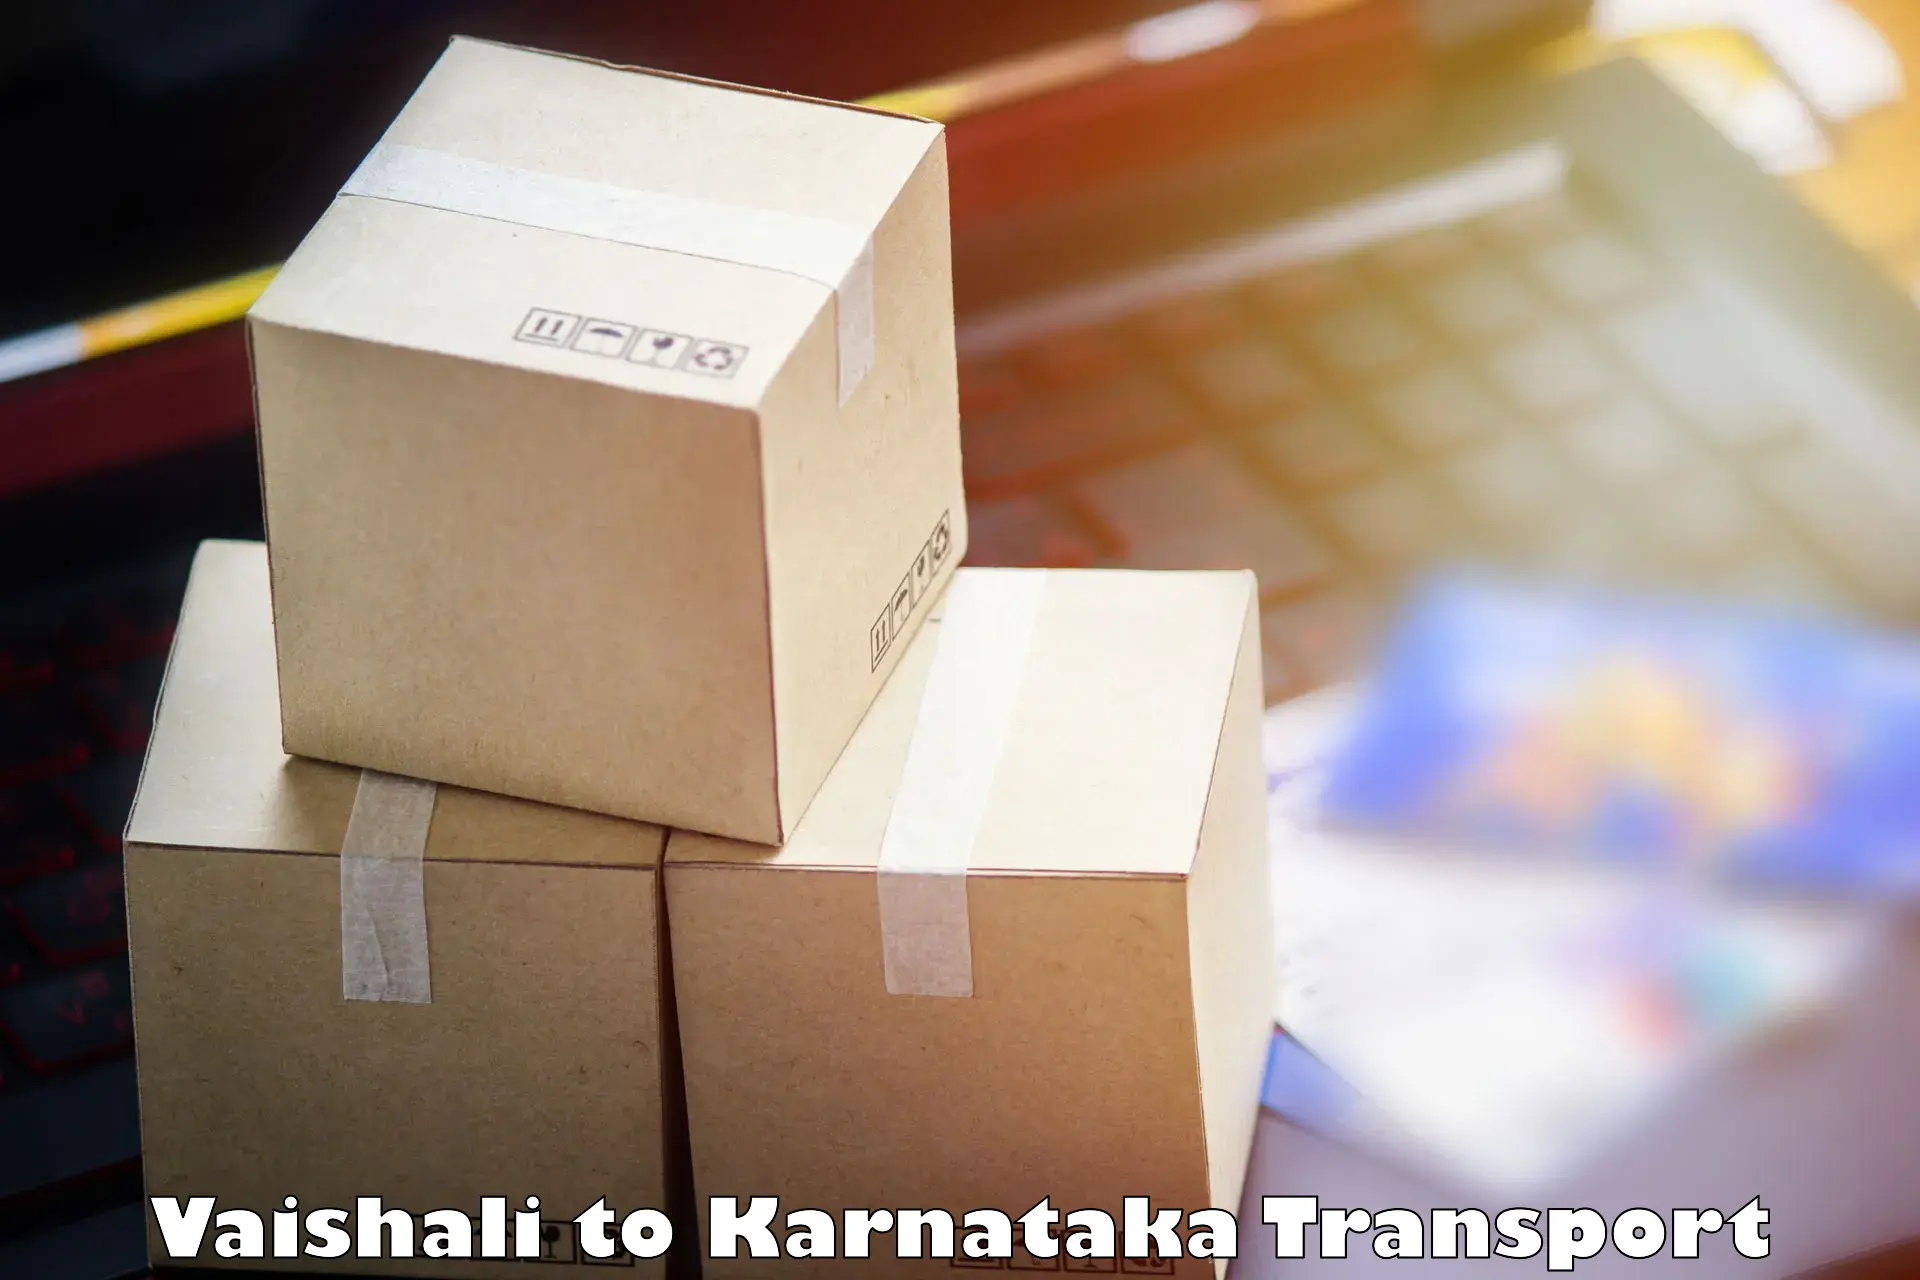 Luggage transport services Vaishali to Mangalore Port